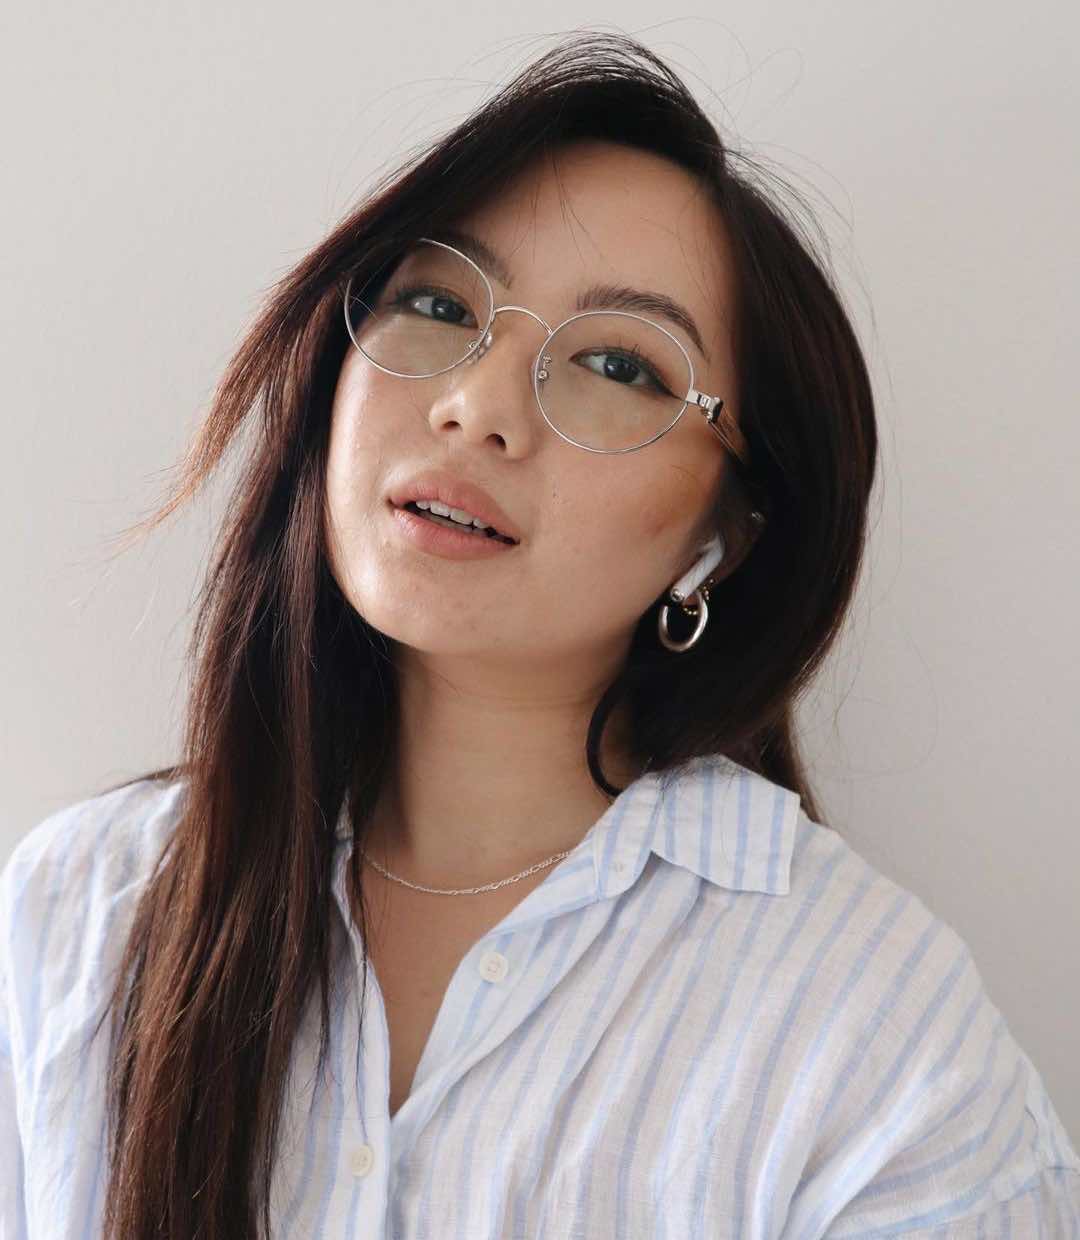 Femme asiatique portant des lunettes rondes asiatiques